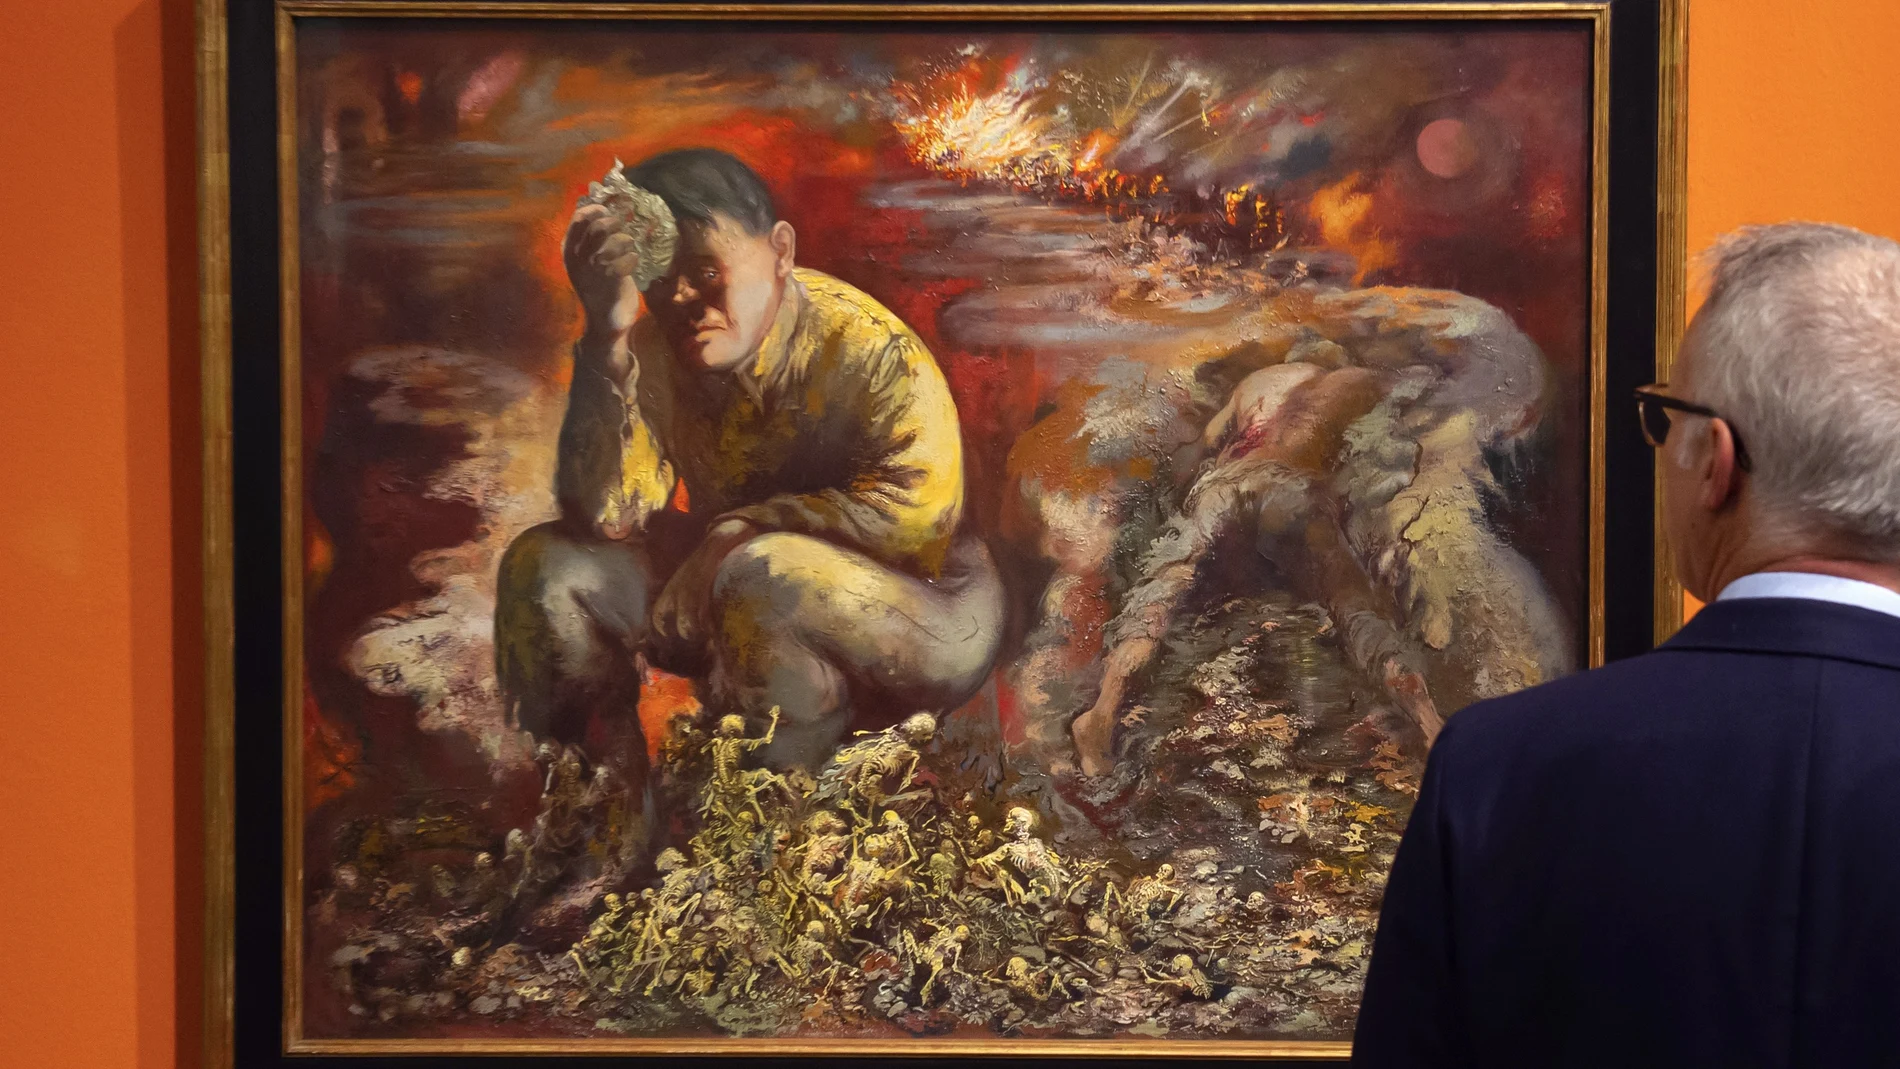 Pintura de 1944 "Caín o Hitler en el infierno", de George Grosz, en el Museo Histórico Alemán en Berlín, Alemania.